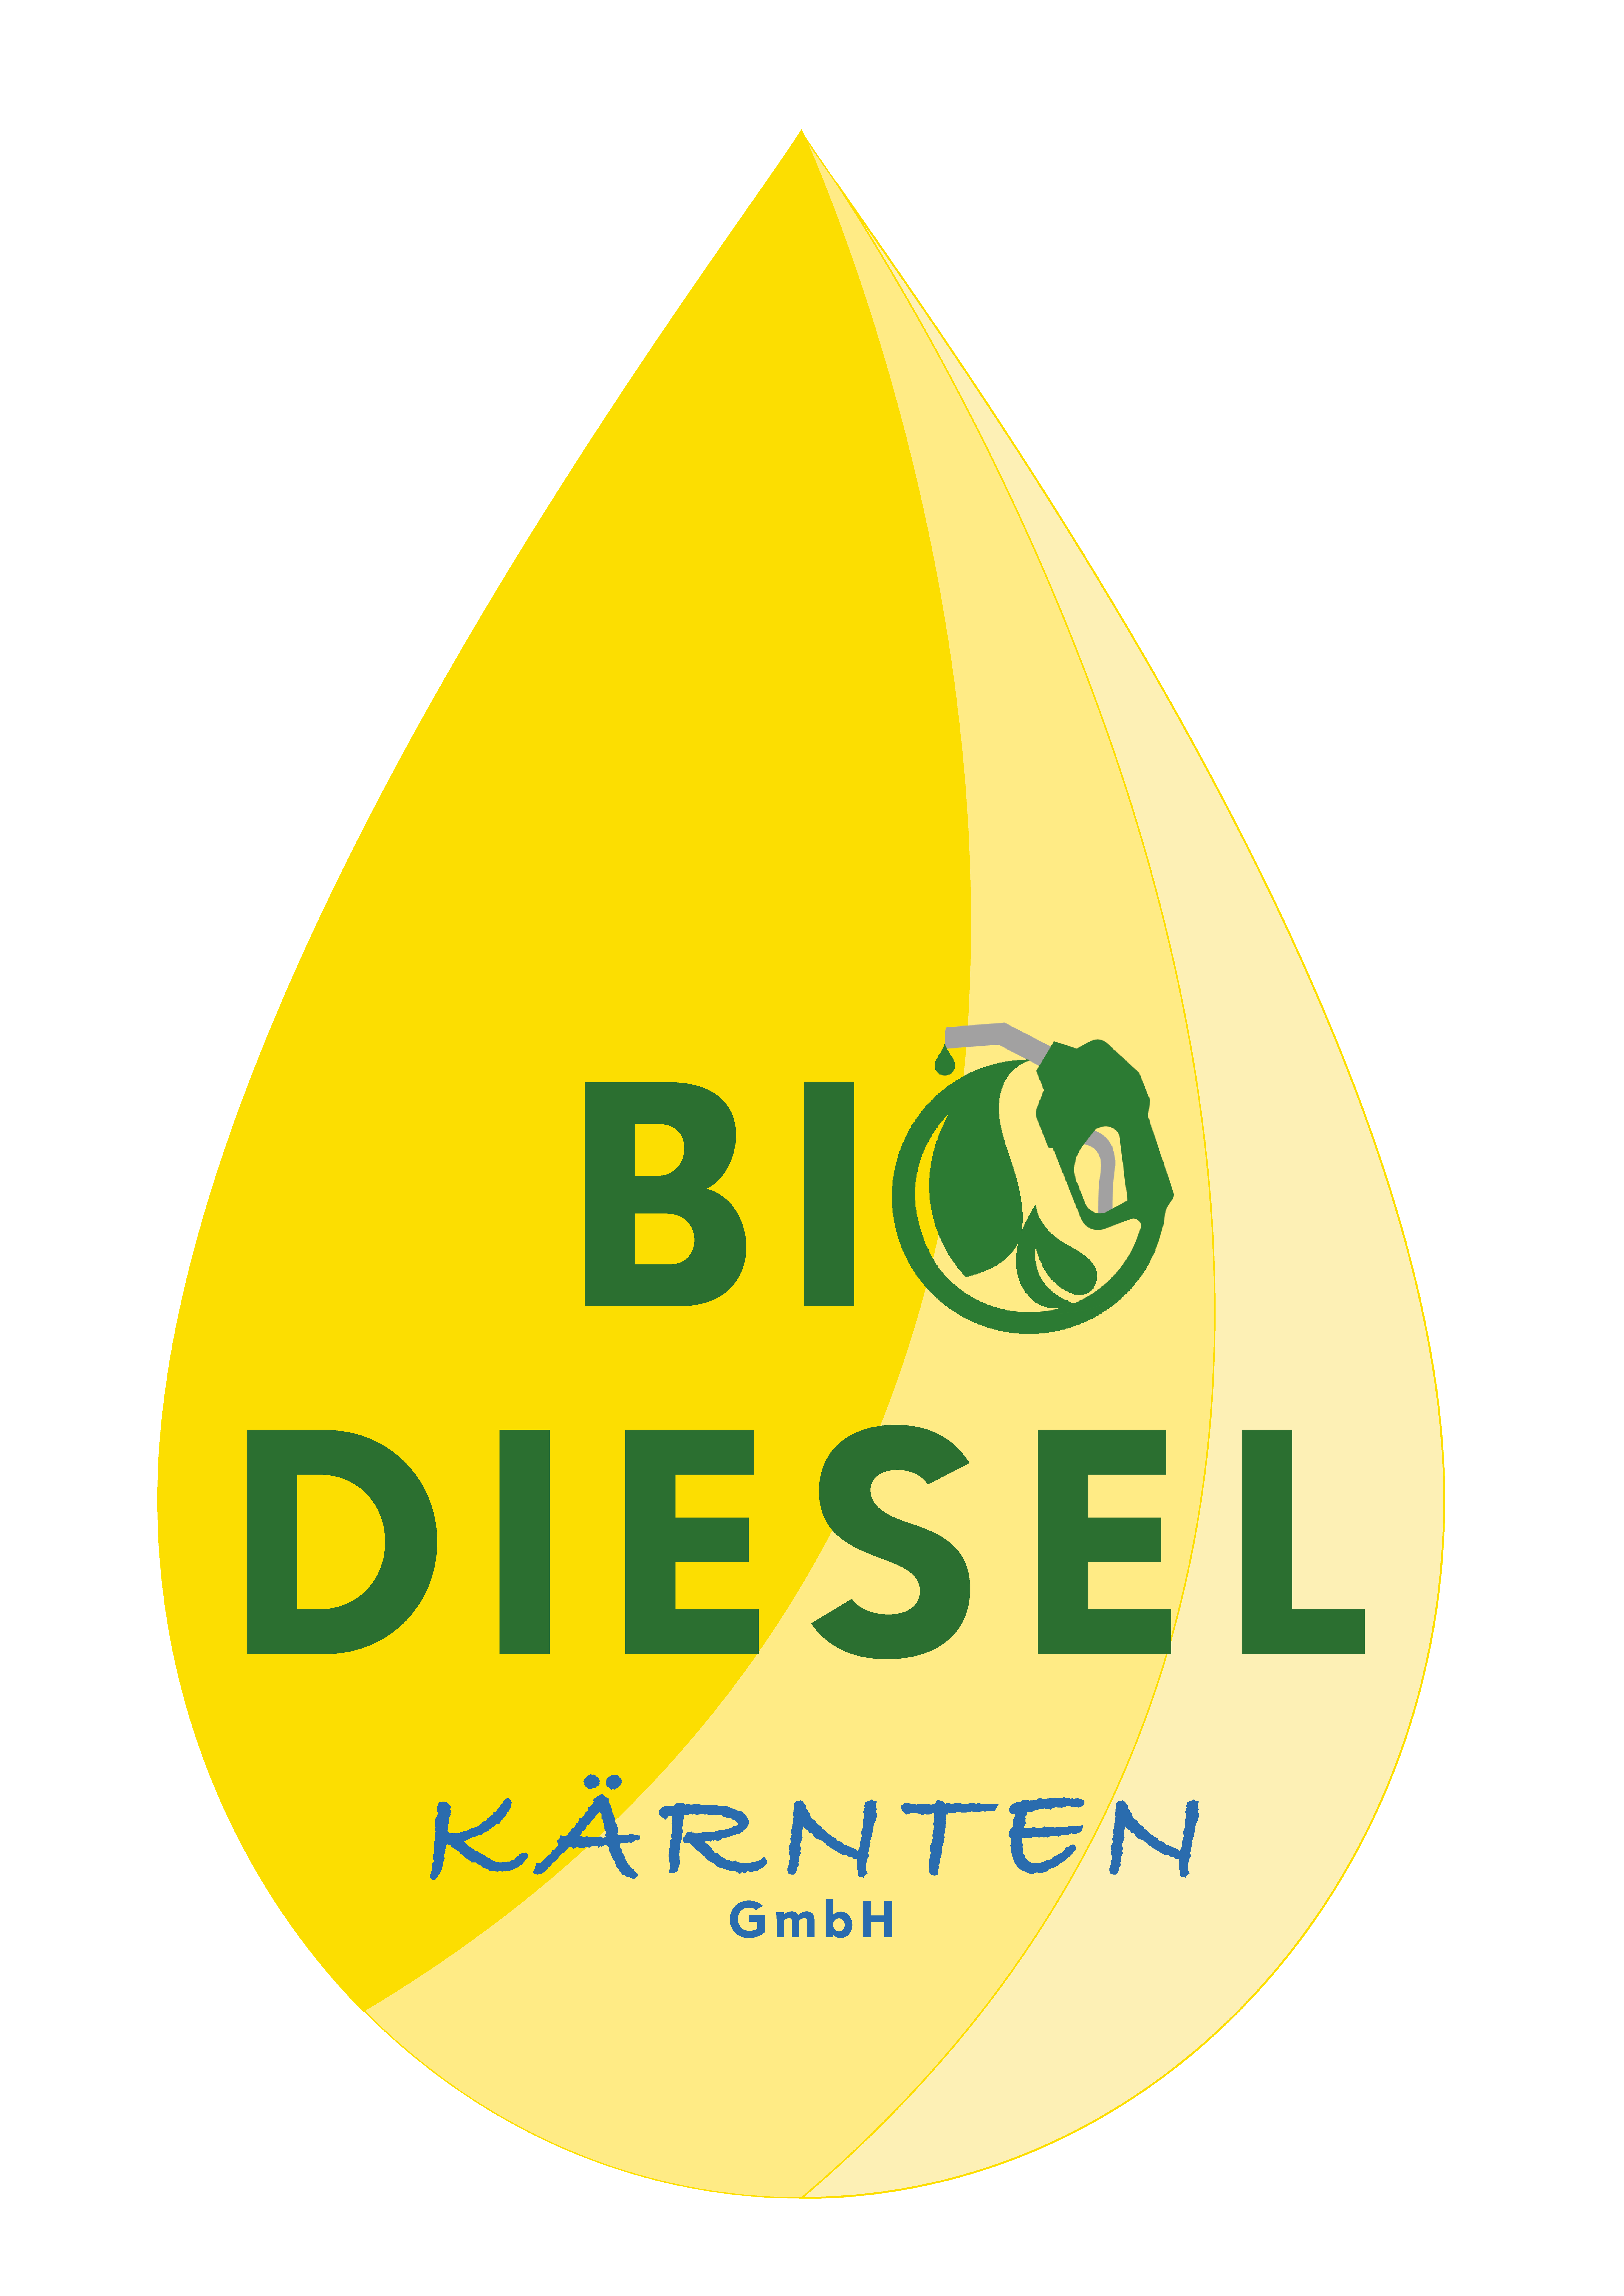 (c) Biodiesel-kaernten.com